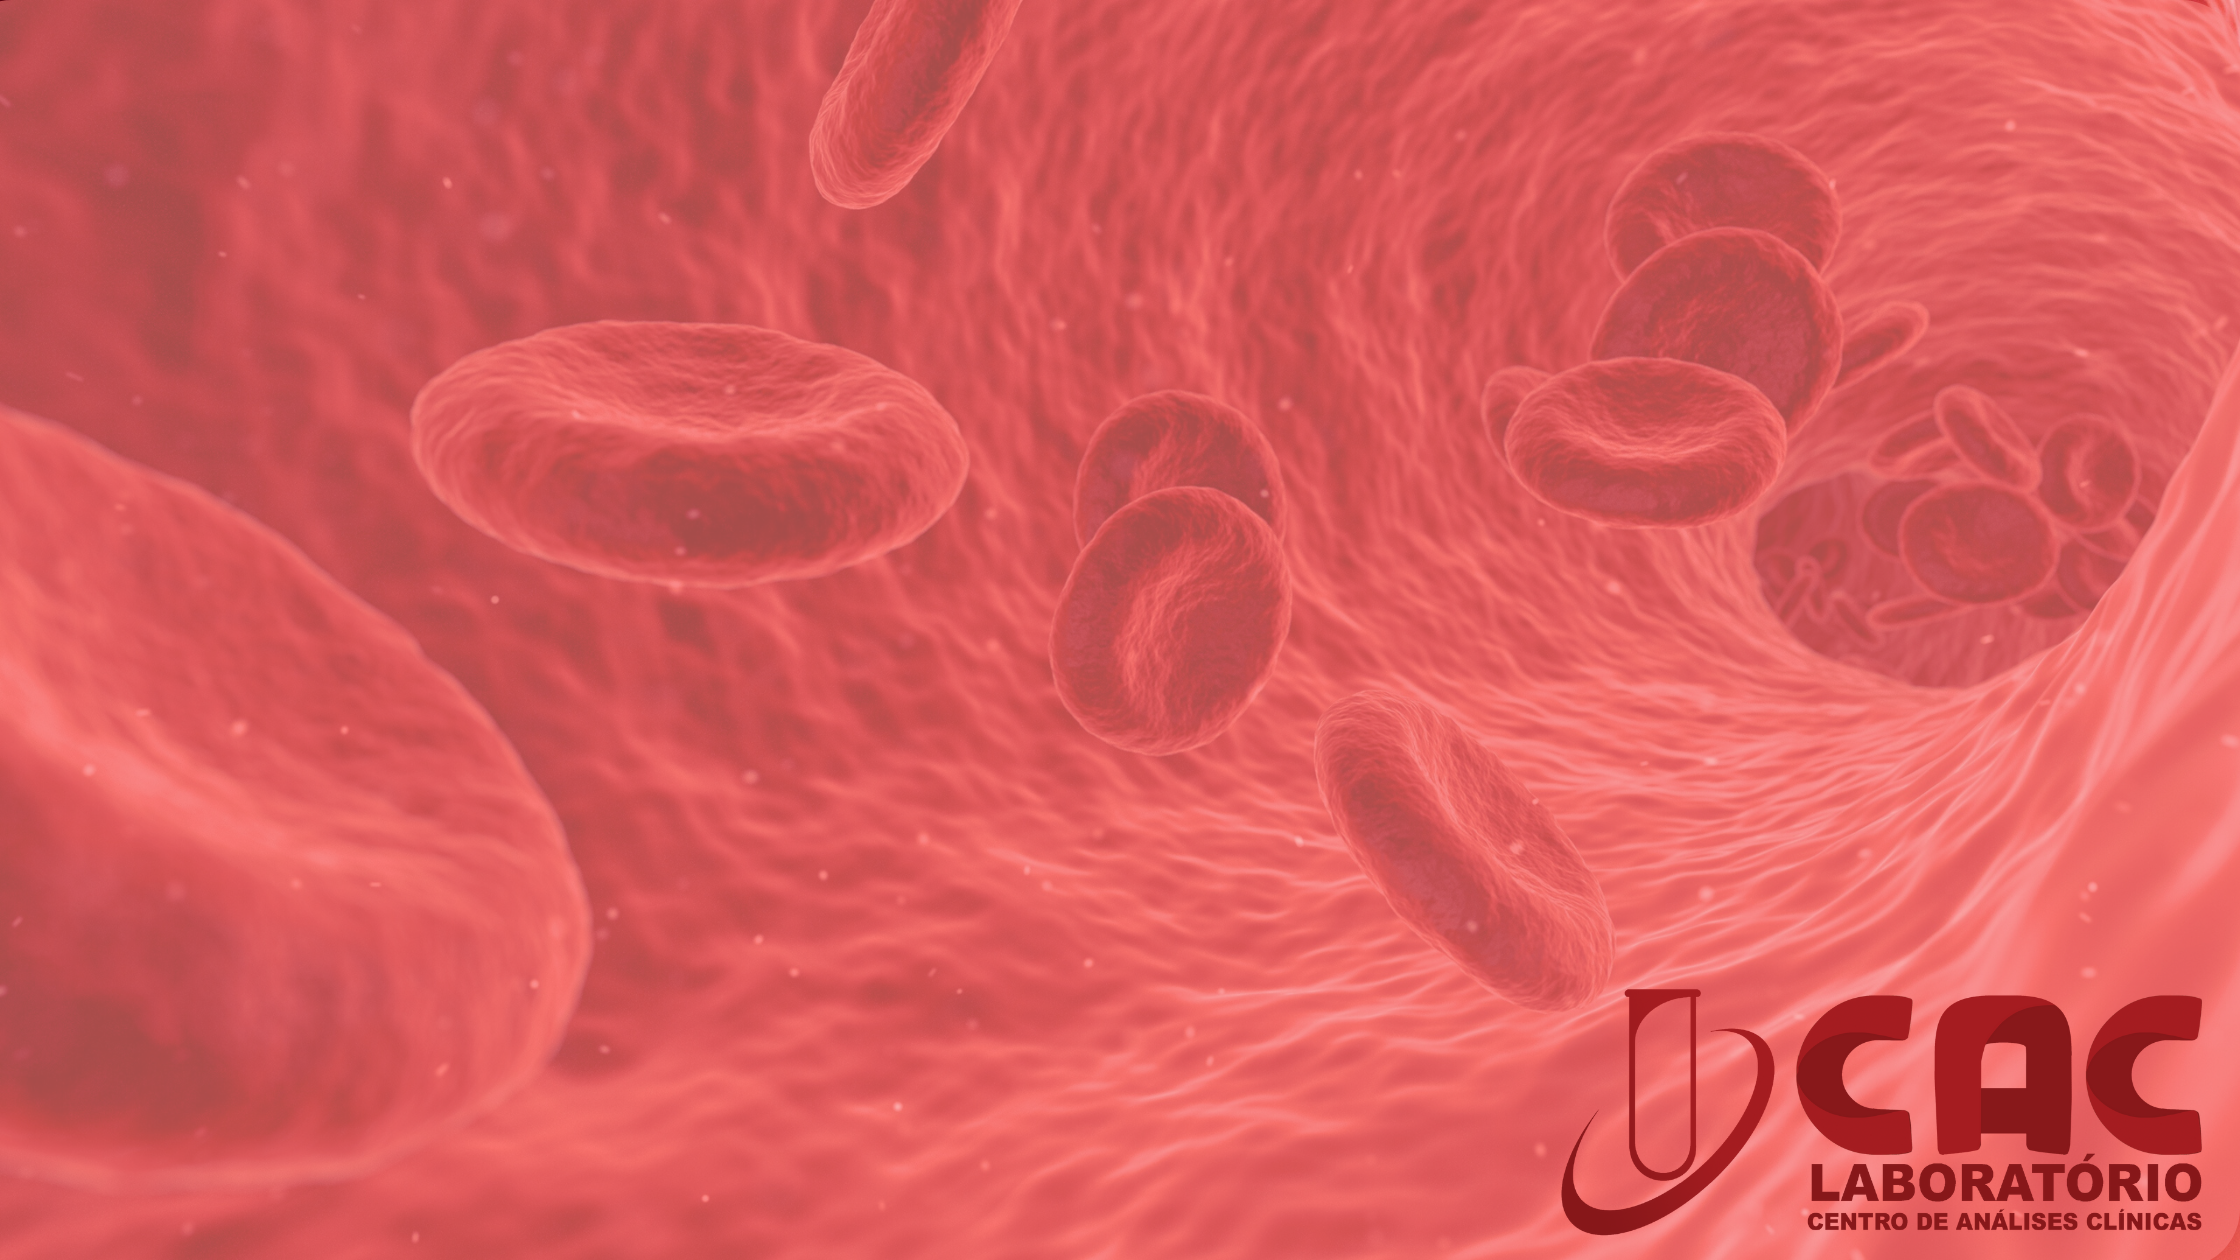 Hemoglobina no Hemograma: A Importância da Análise e seus Índices na Detecção de Anemia